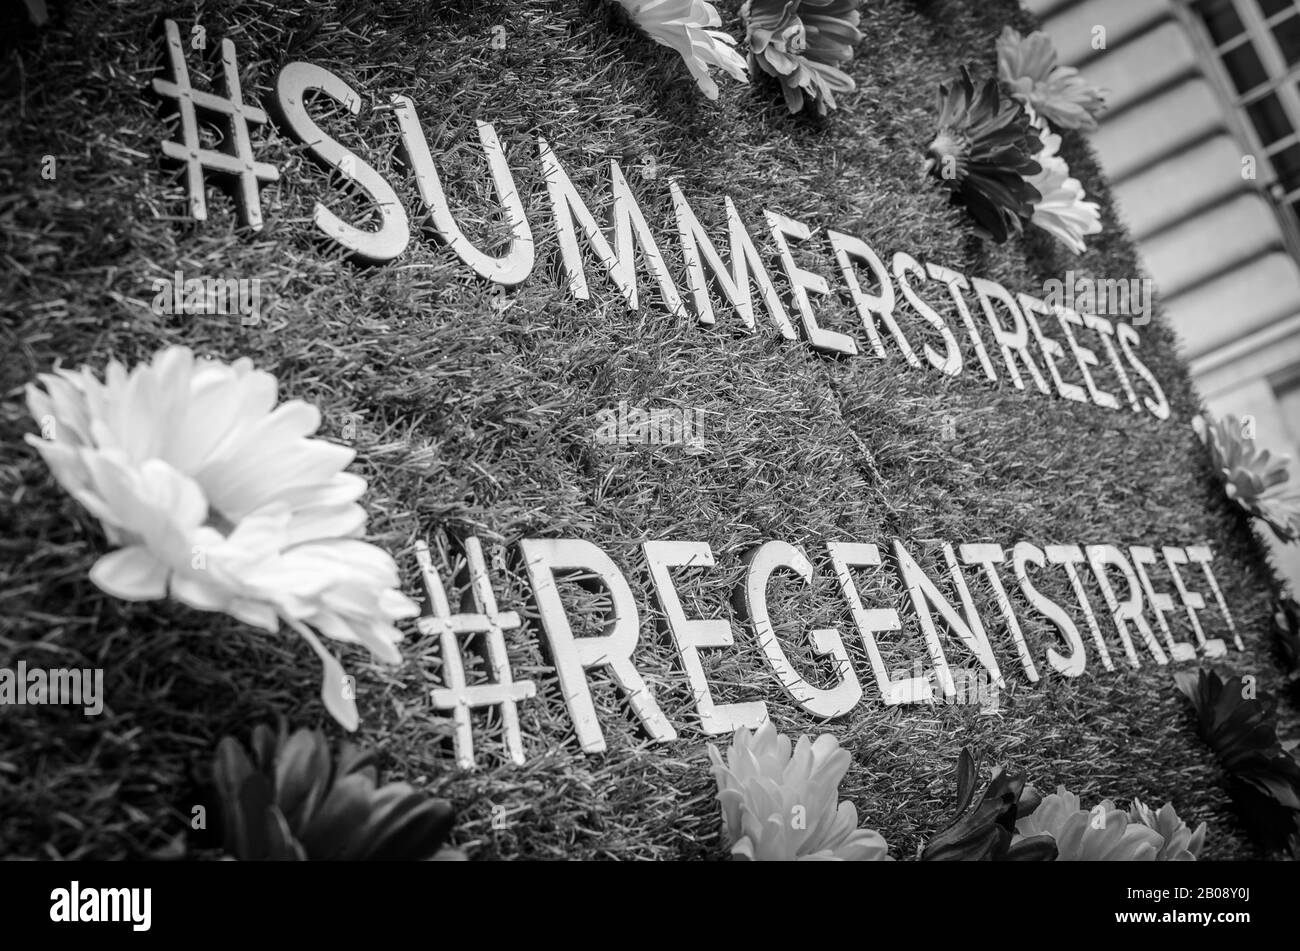 Affichage floral pour le festival Summer Streets à Regent Street, Londres, Angleterre Banque D'Images